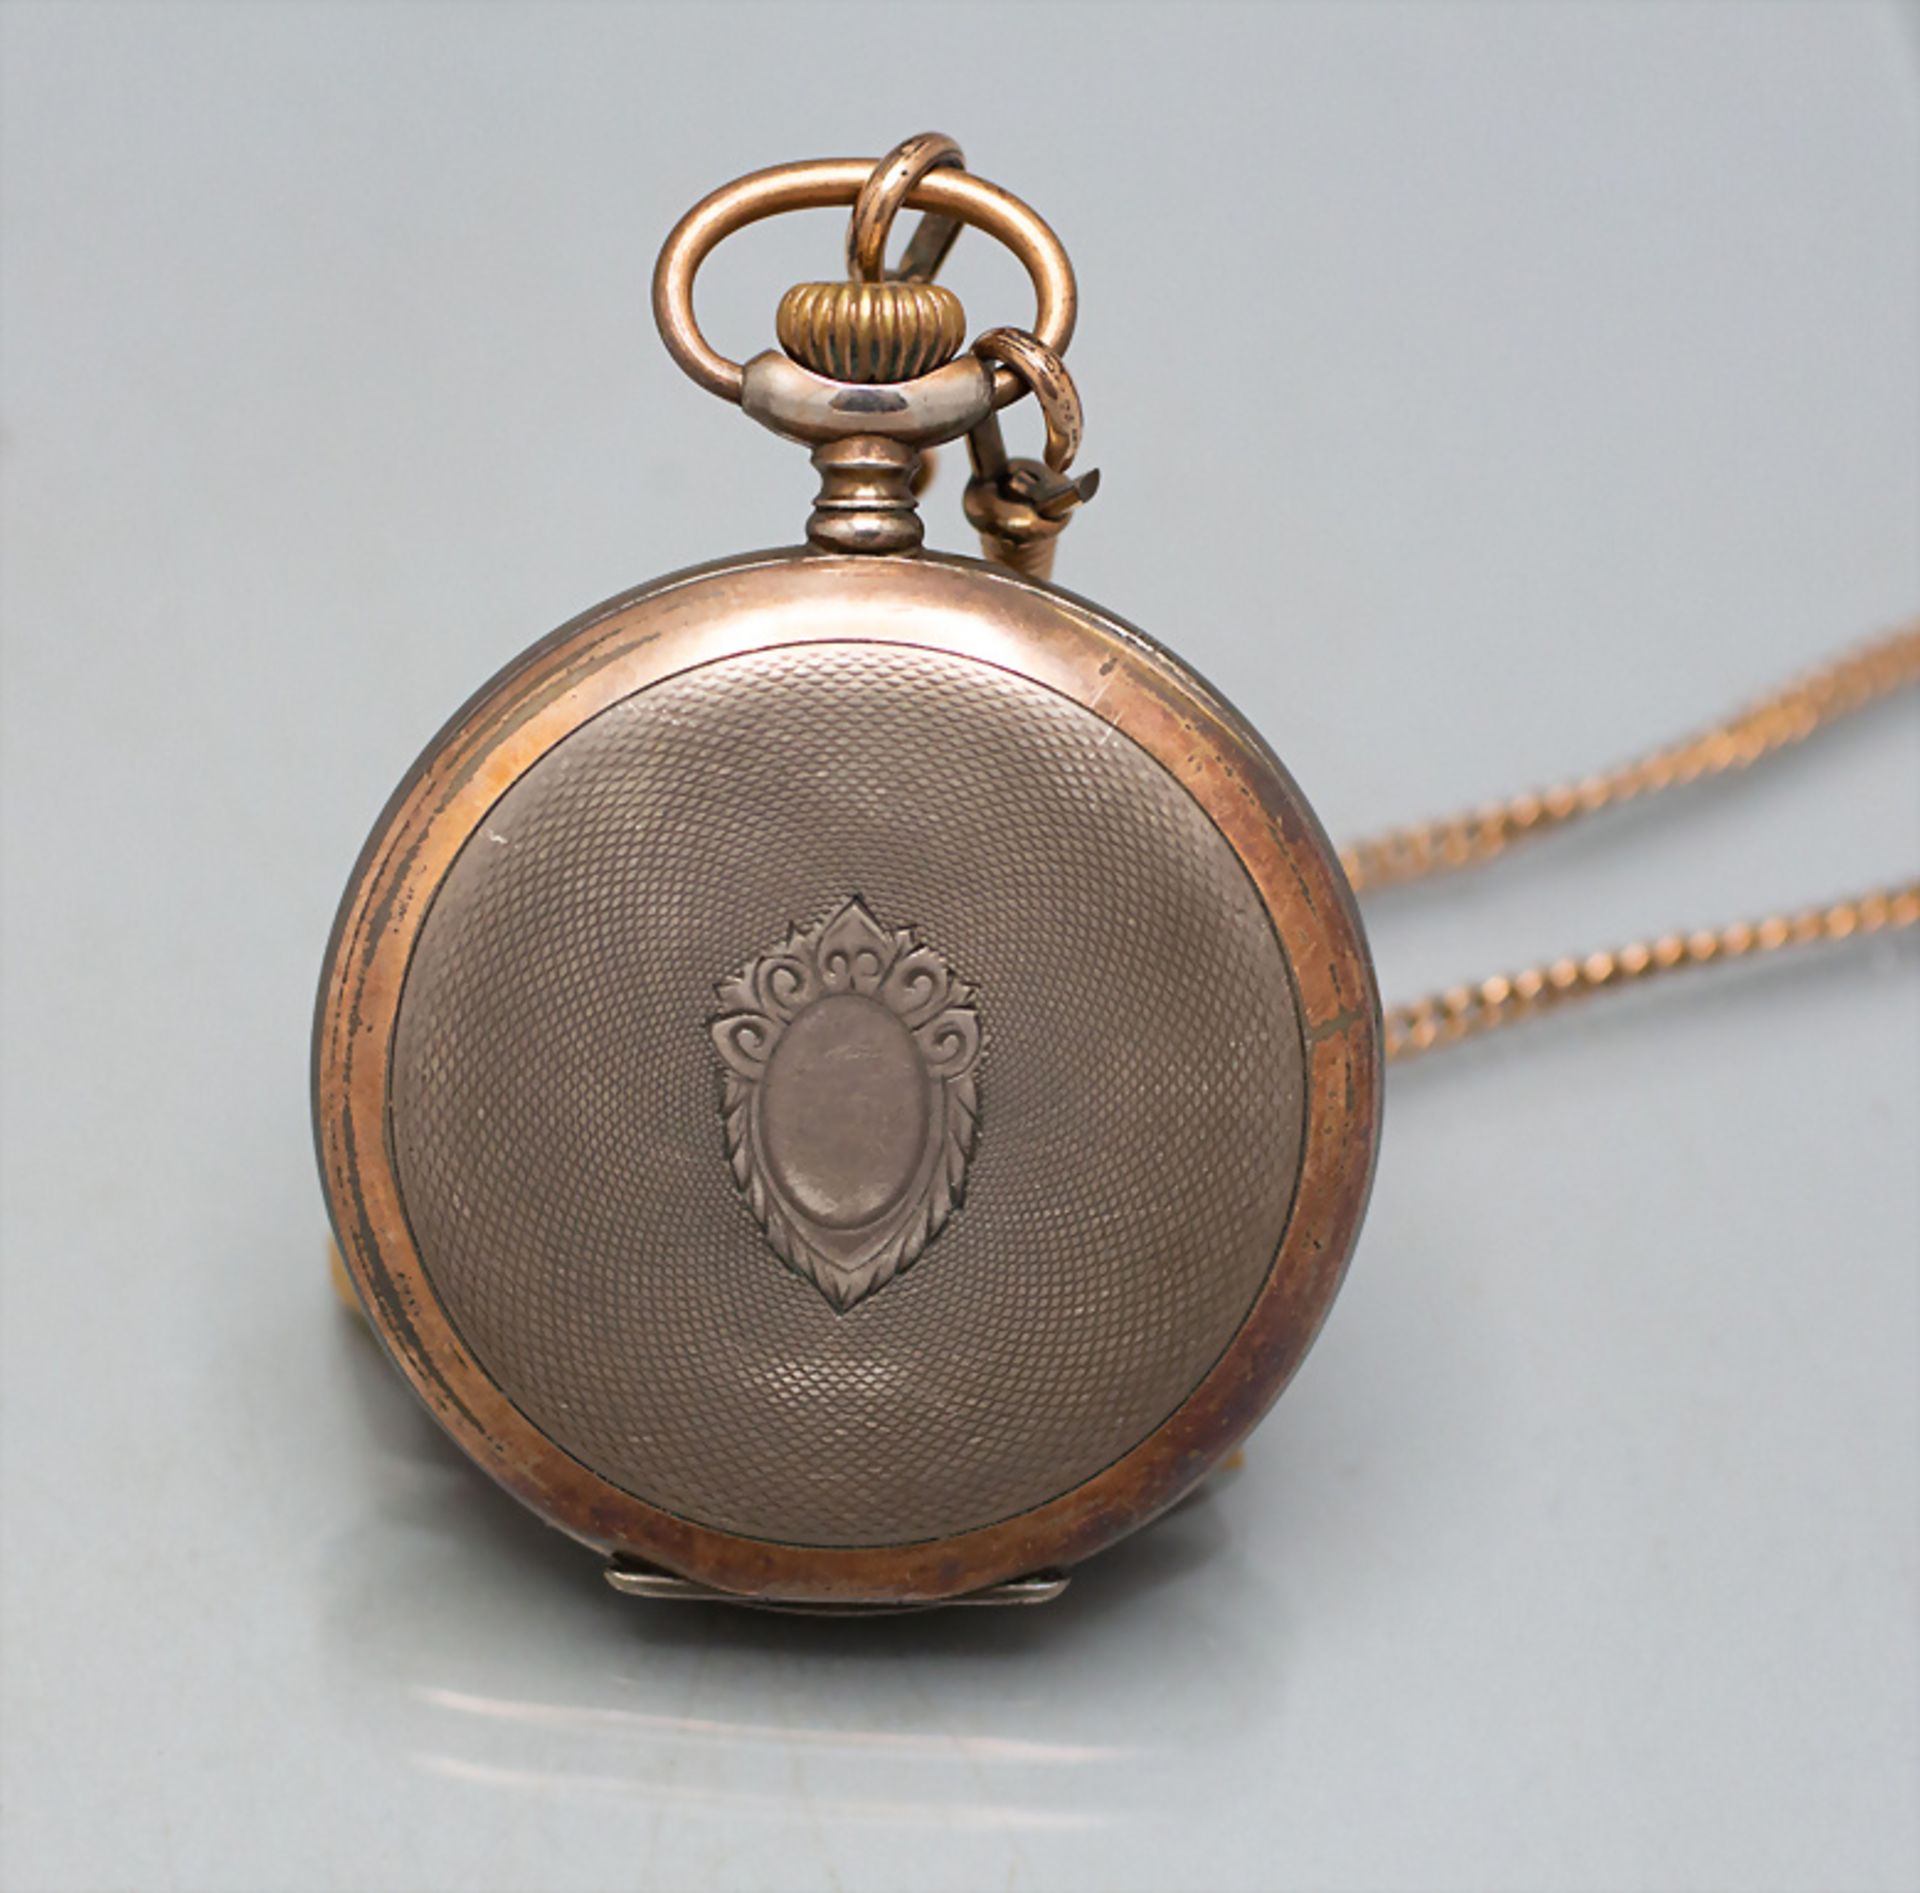 Taschenuhr mit Kette / A pocket watch with chain, Junghans, um 1910 - Bild 7 aus 7